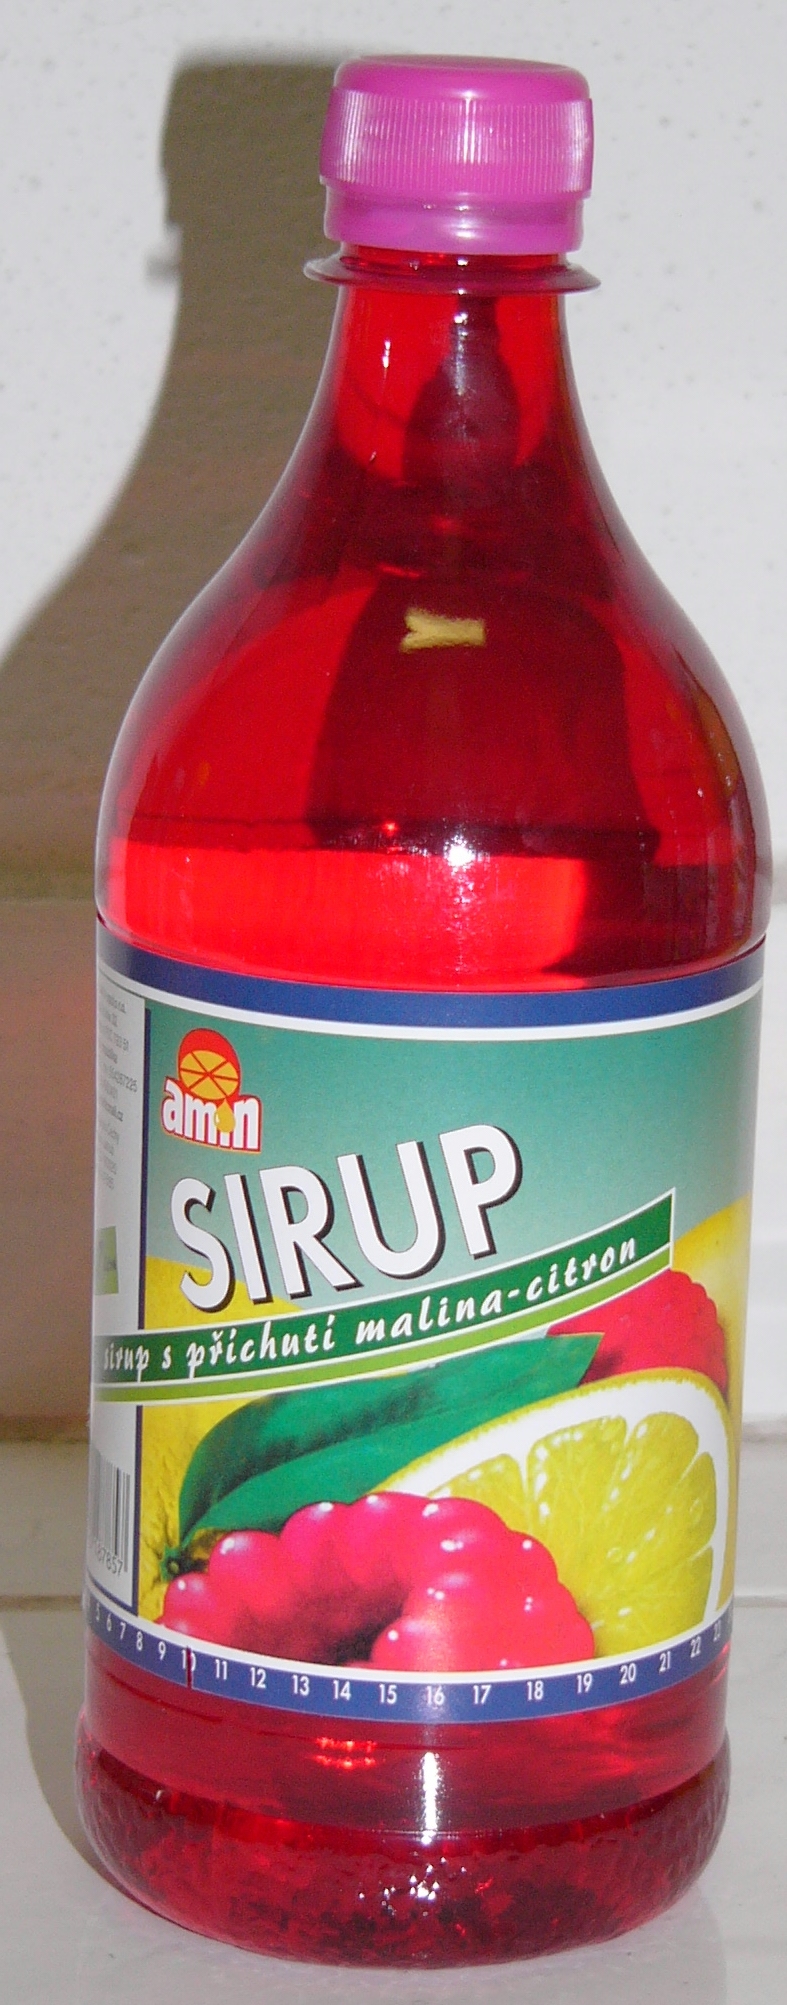 sirupC 0,7 malina-citron.jpg